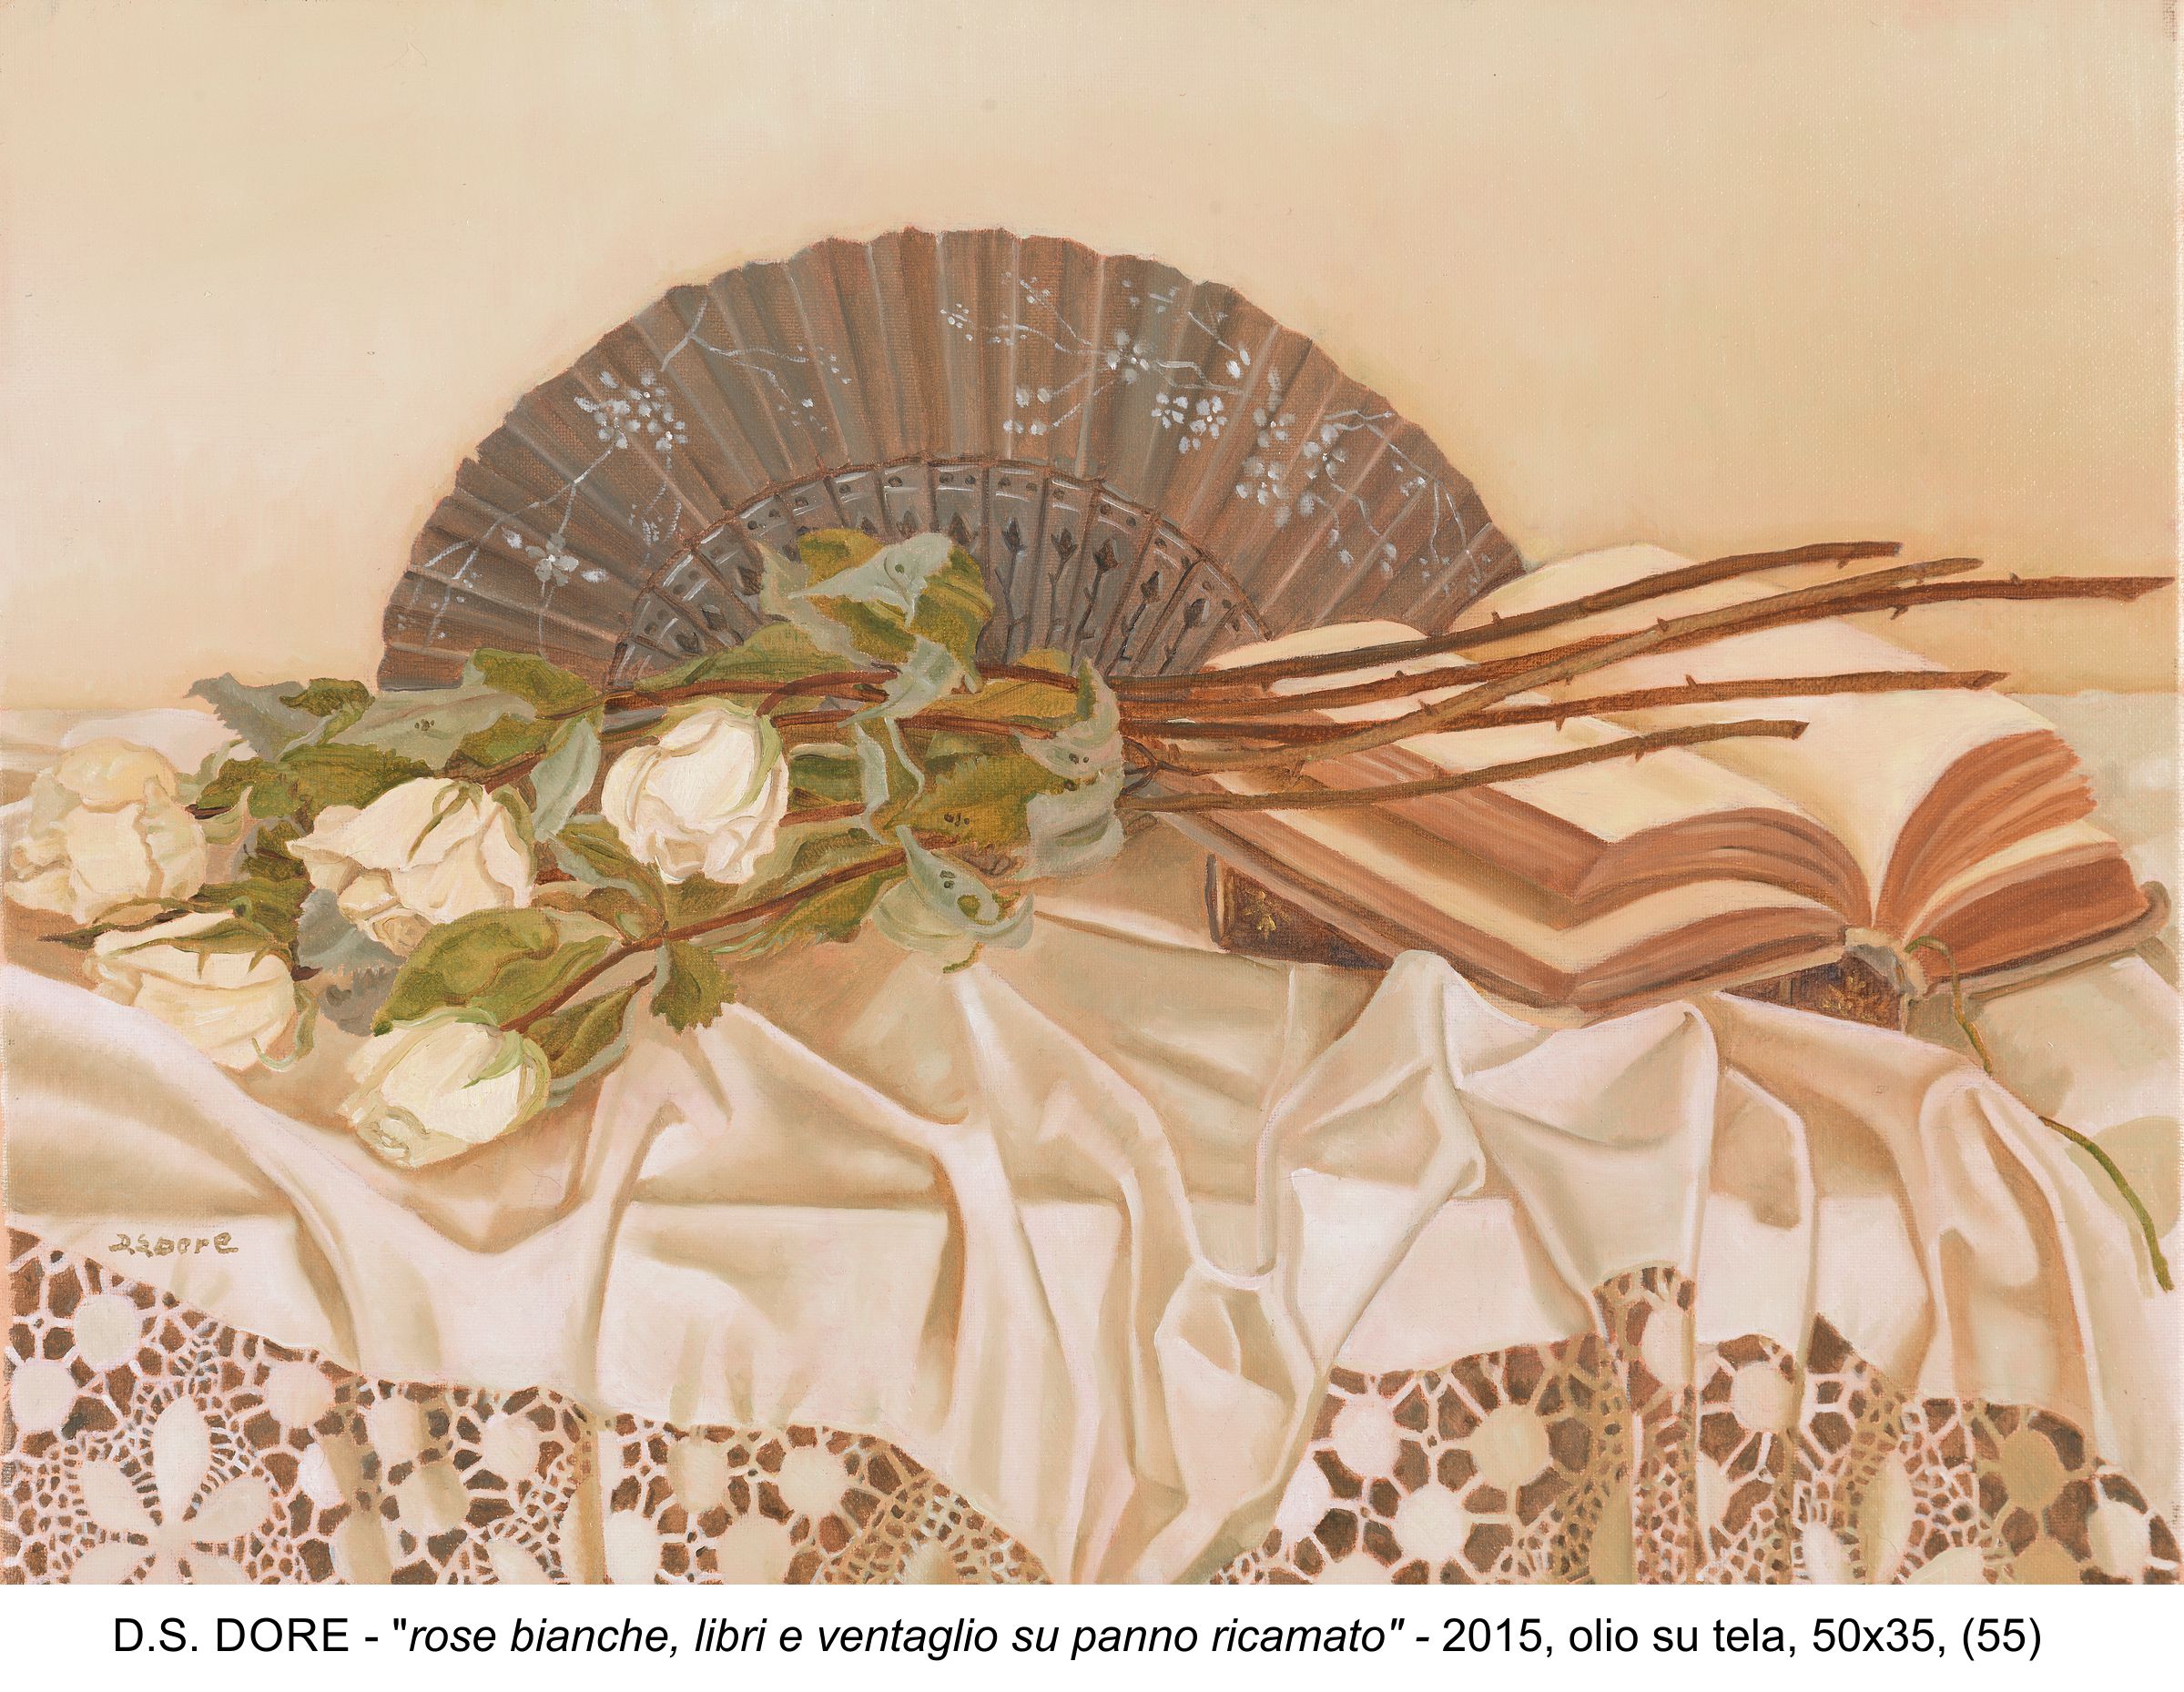 055 Rose bianche libri e ventaglio su panno ricamato 2015 olio su tela cm 50x35